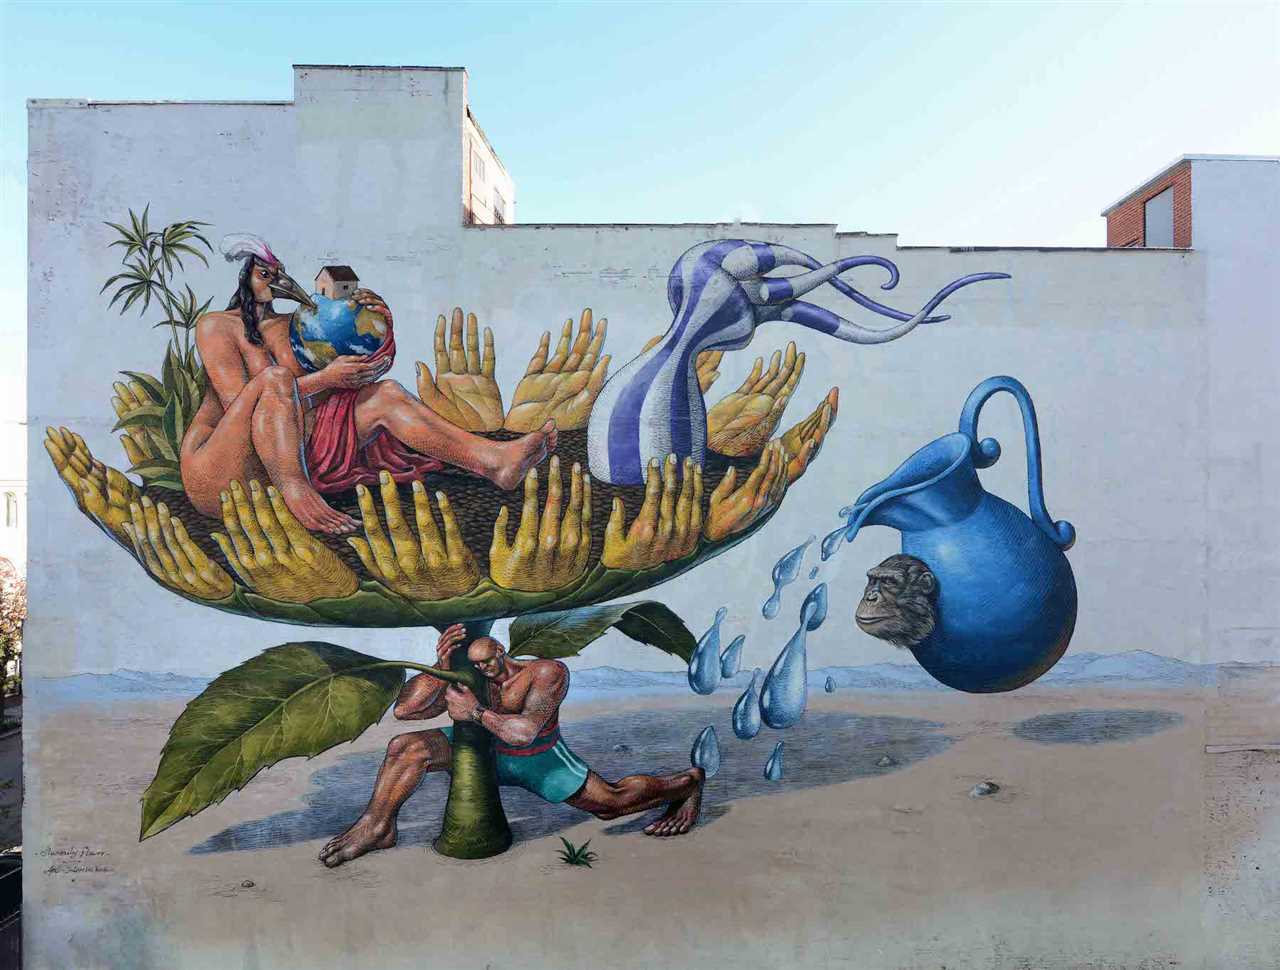 Street Art as a Medium for Social Justice